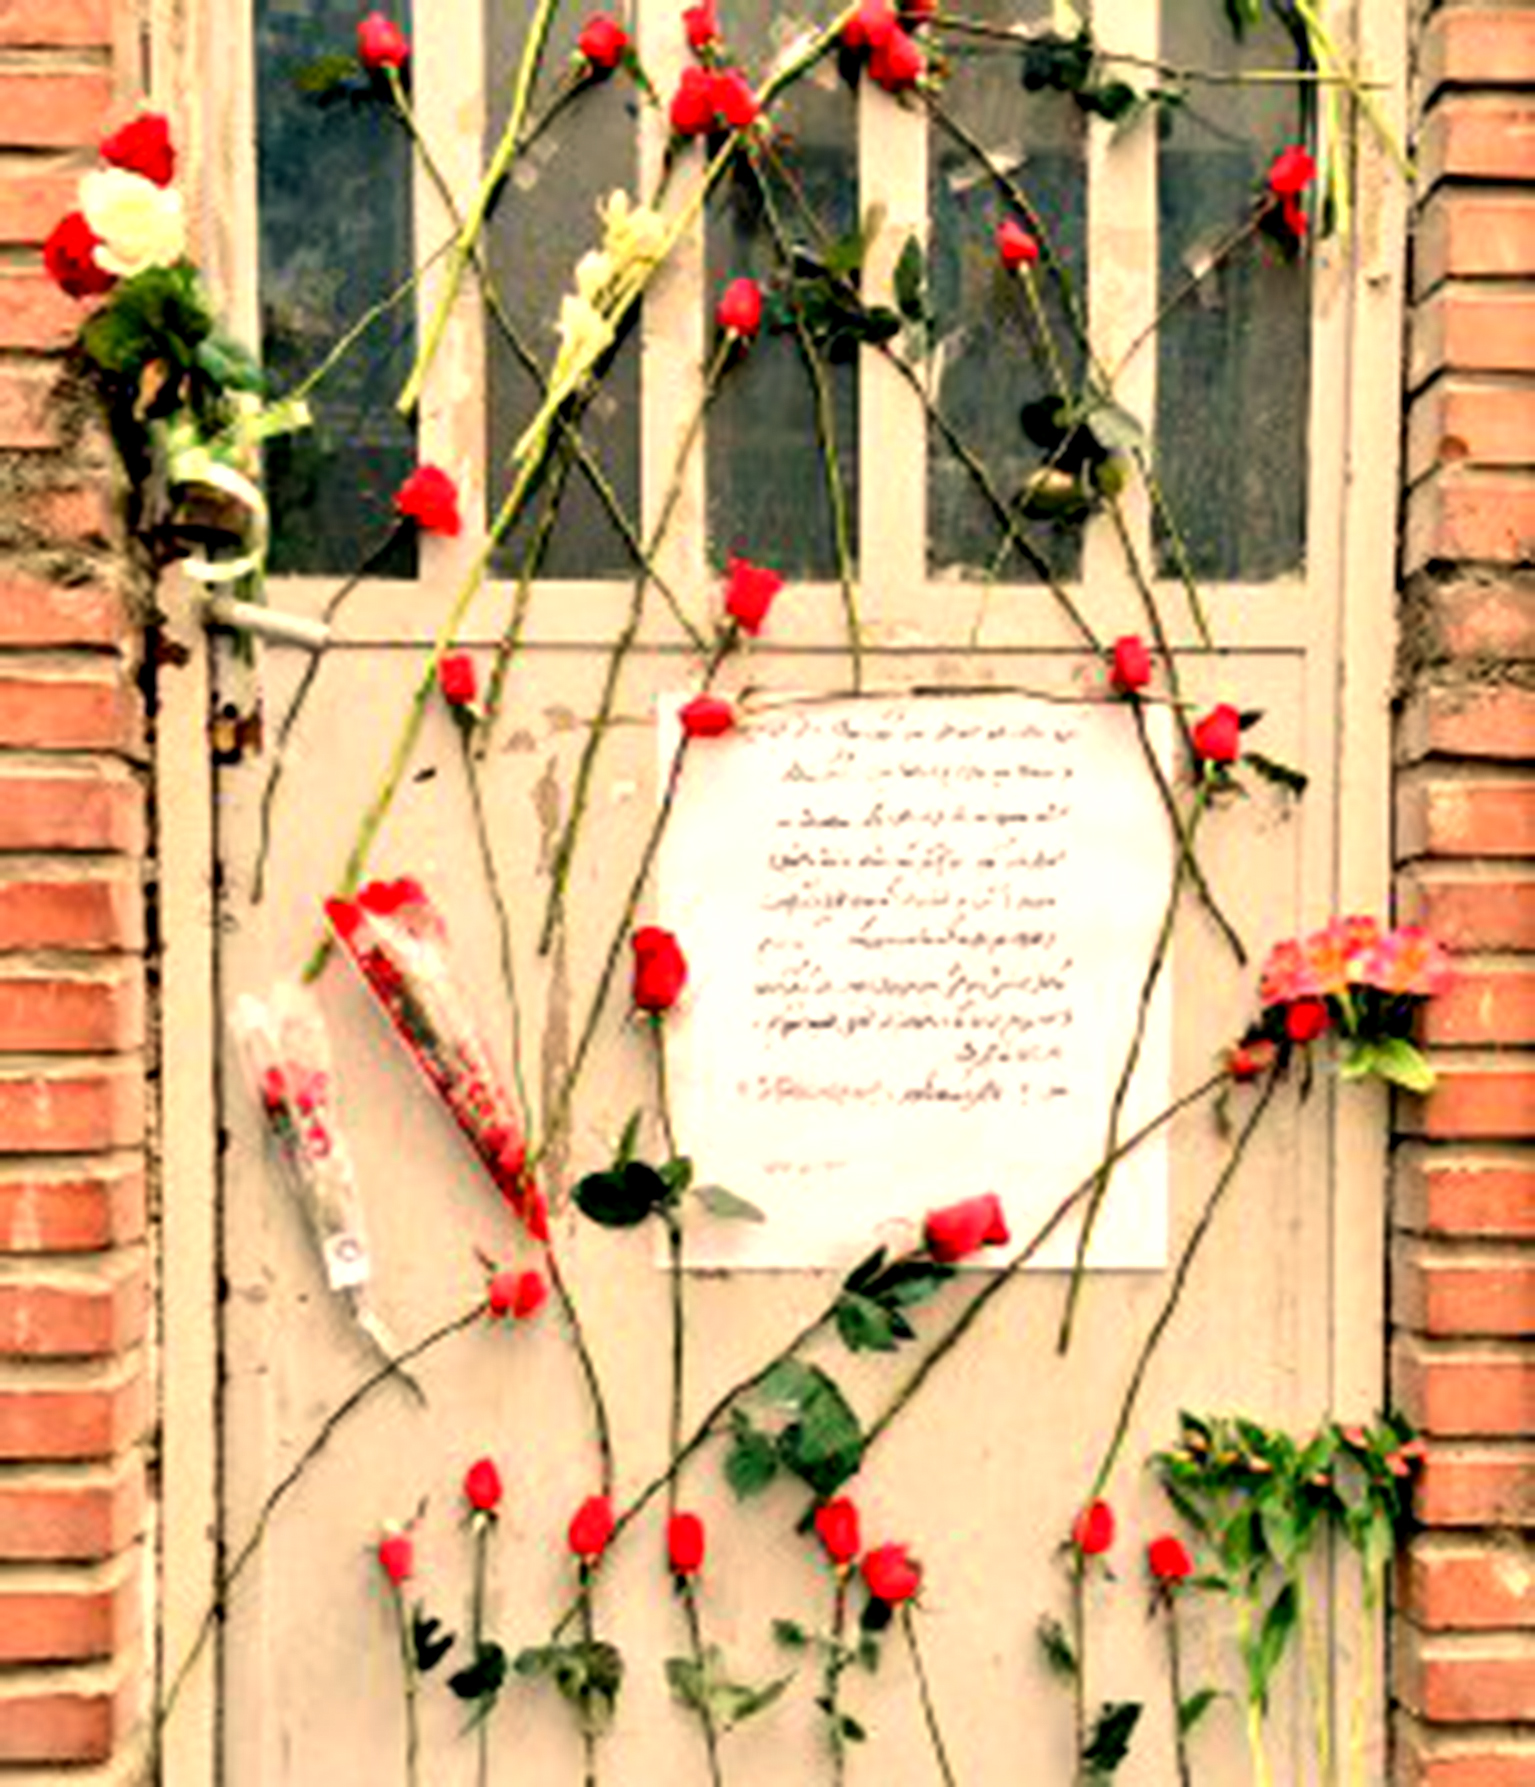 عکس: گلباران درب پلمپ شده انجمن اسلامی دانشگاه خواجه نصیر